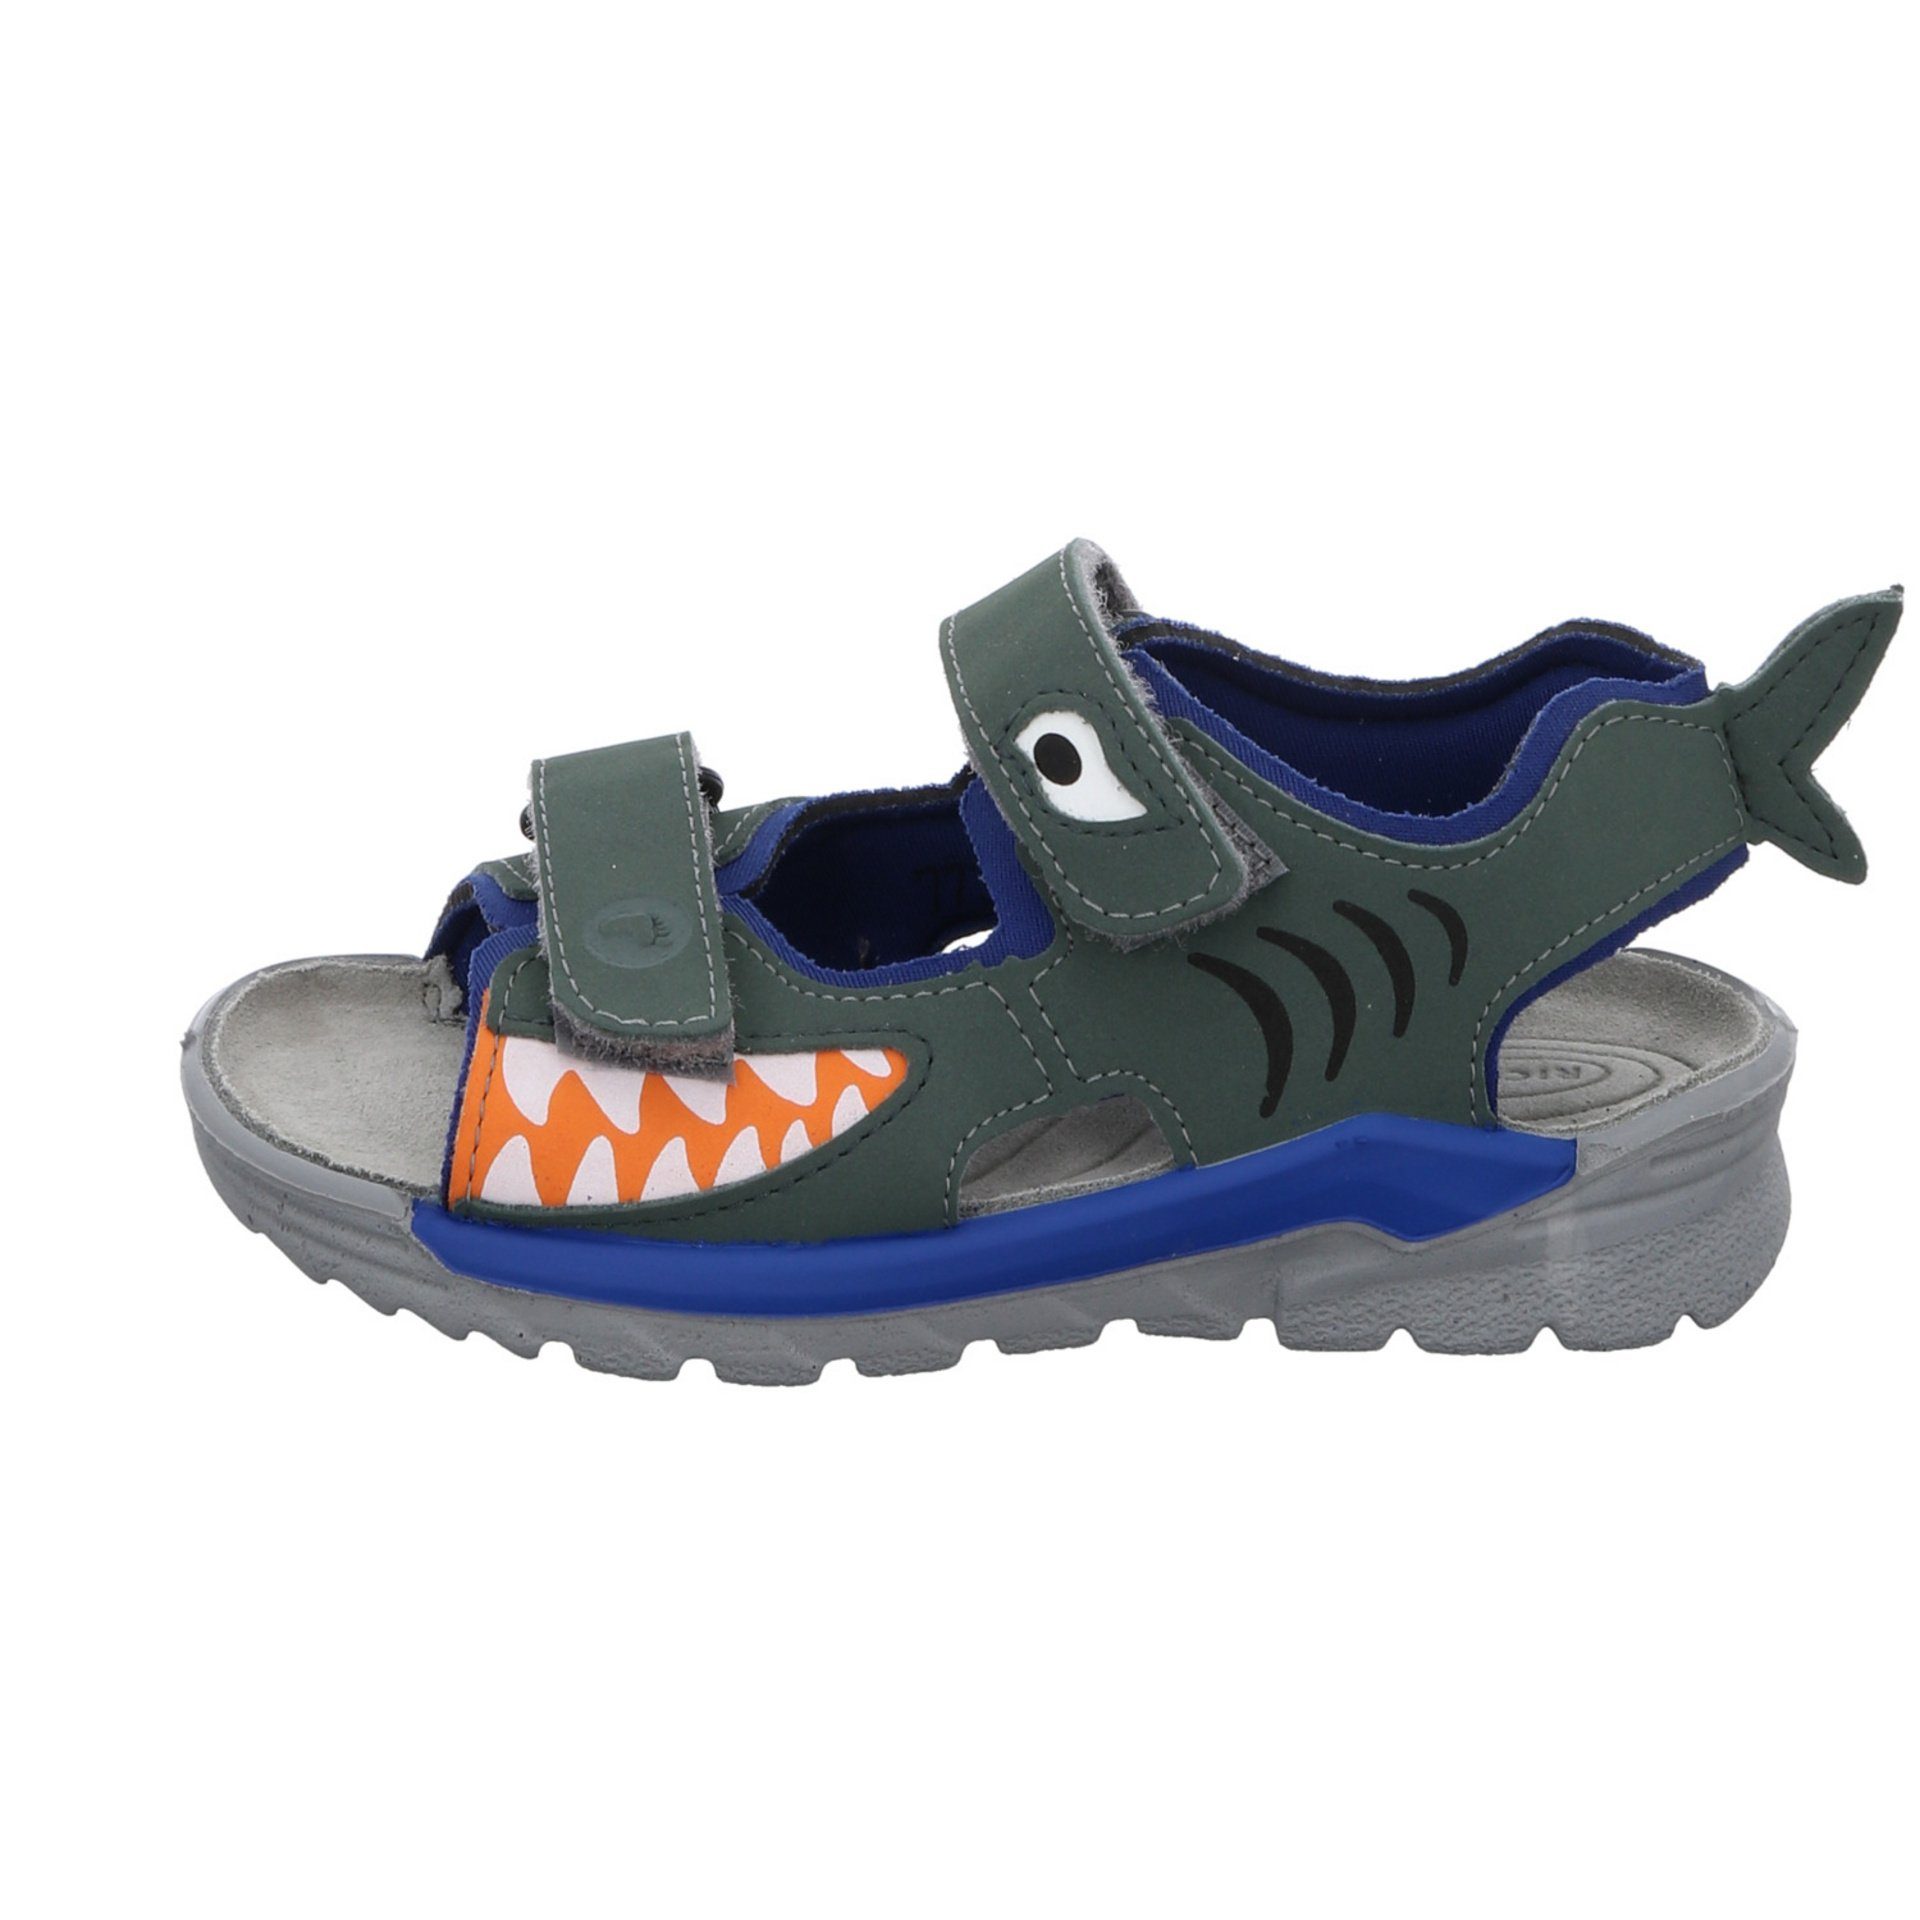 Schuhe Textil Sandale Sandale grün Shark Jungen Sandalen Kinderschuhe Ricosta